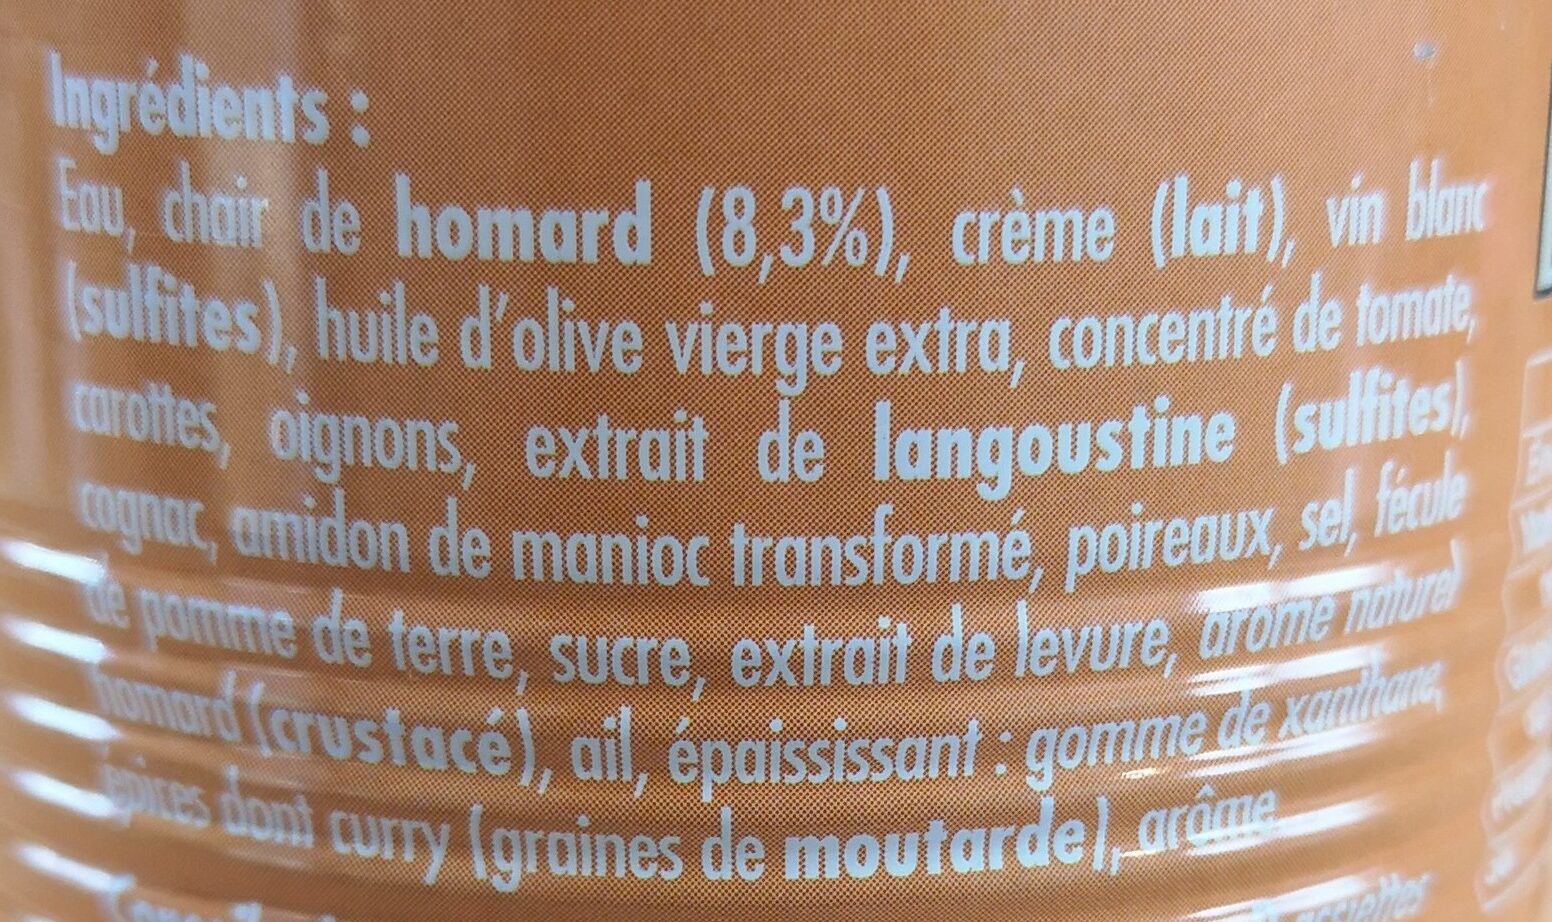 Bisque de homard - Ingredients - fr